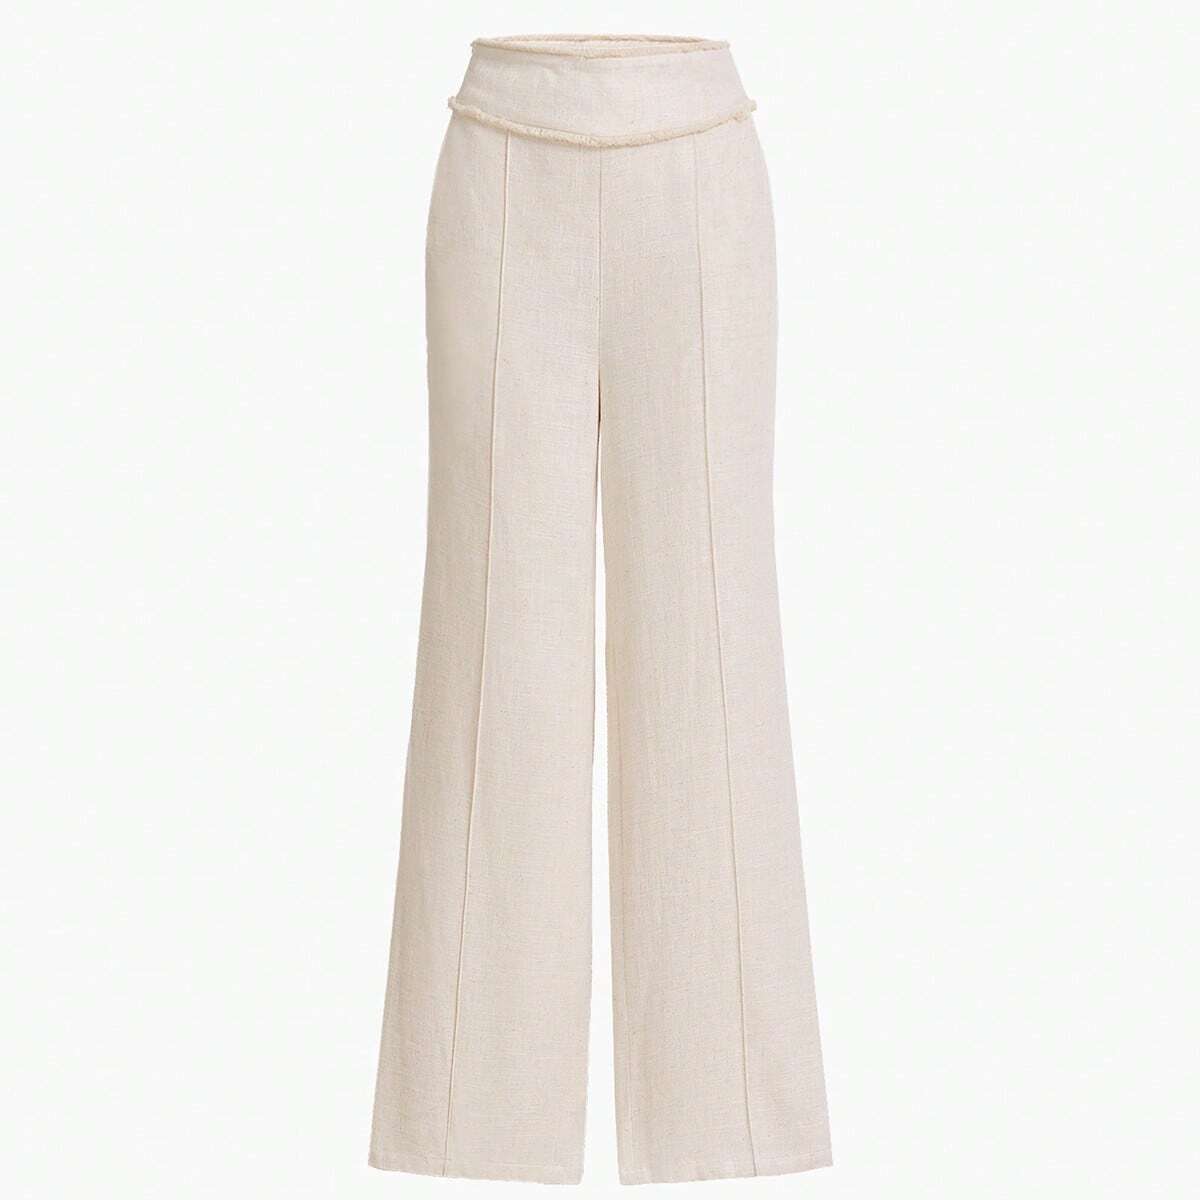 MOTF Premium Linen pants in cream.